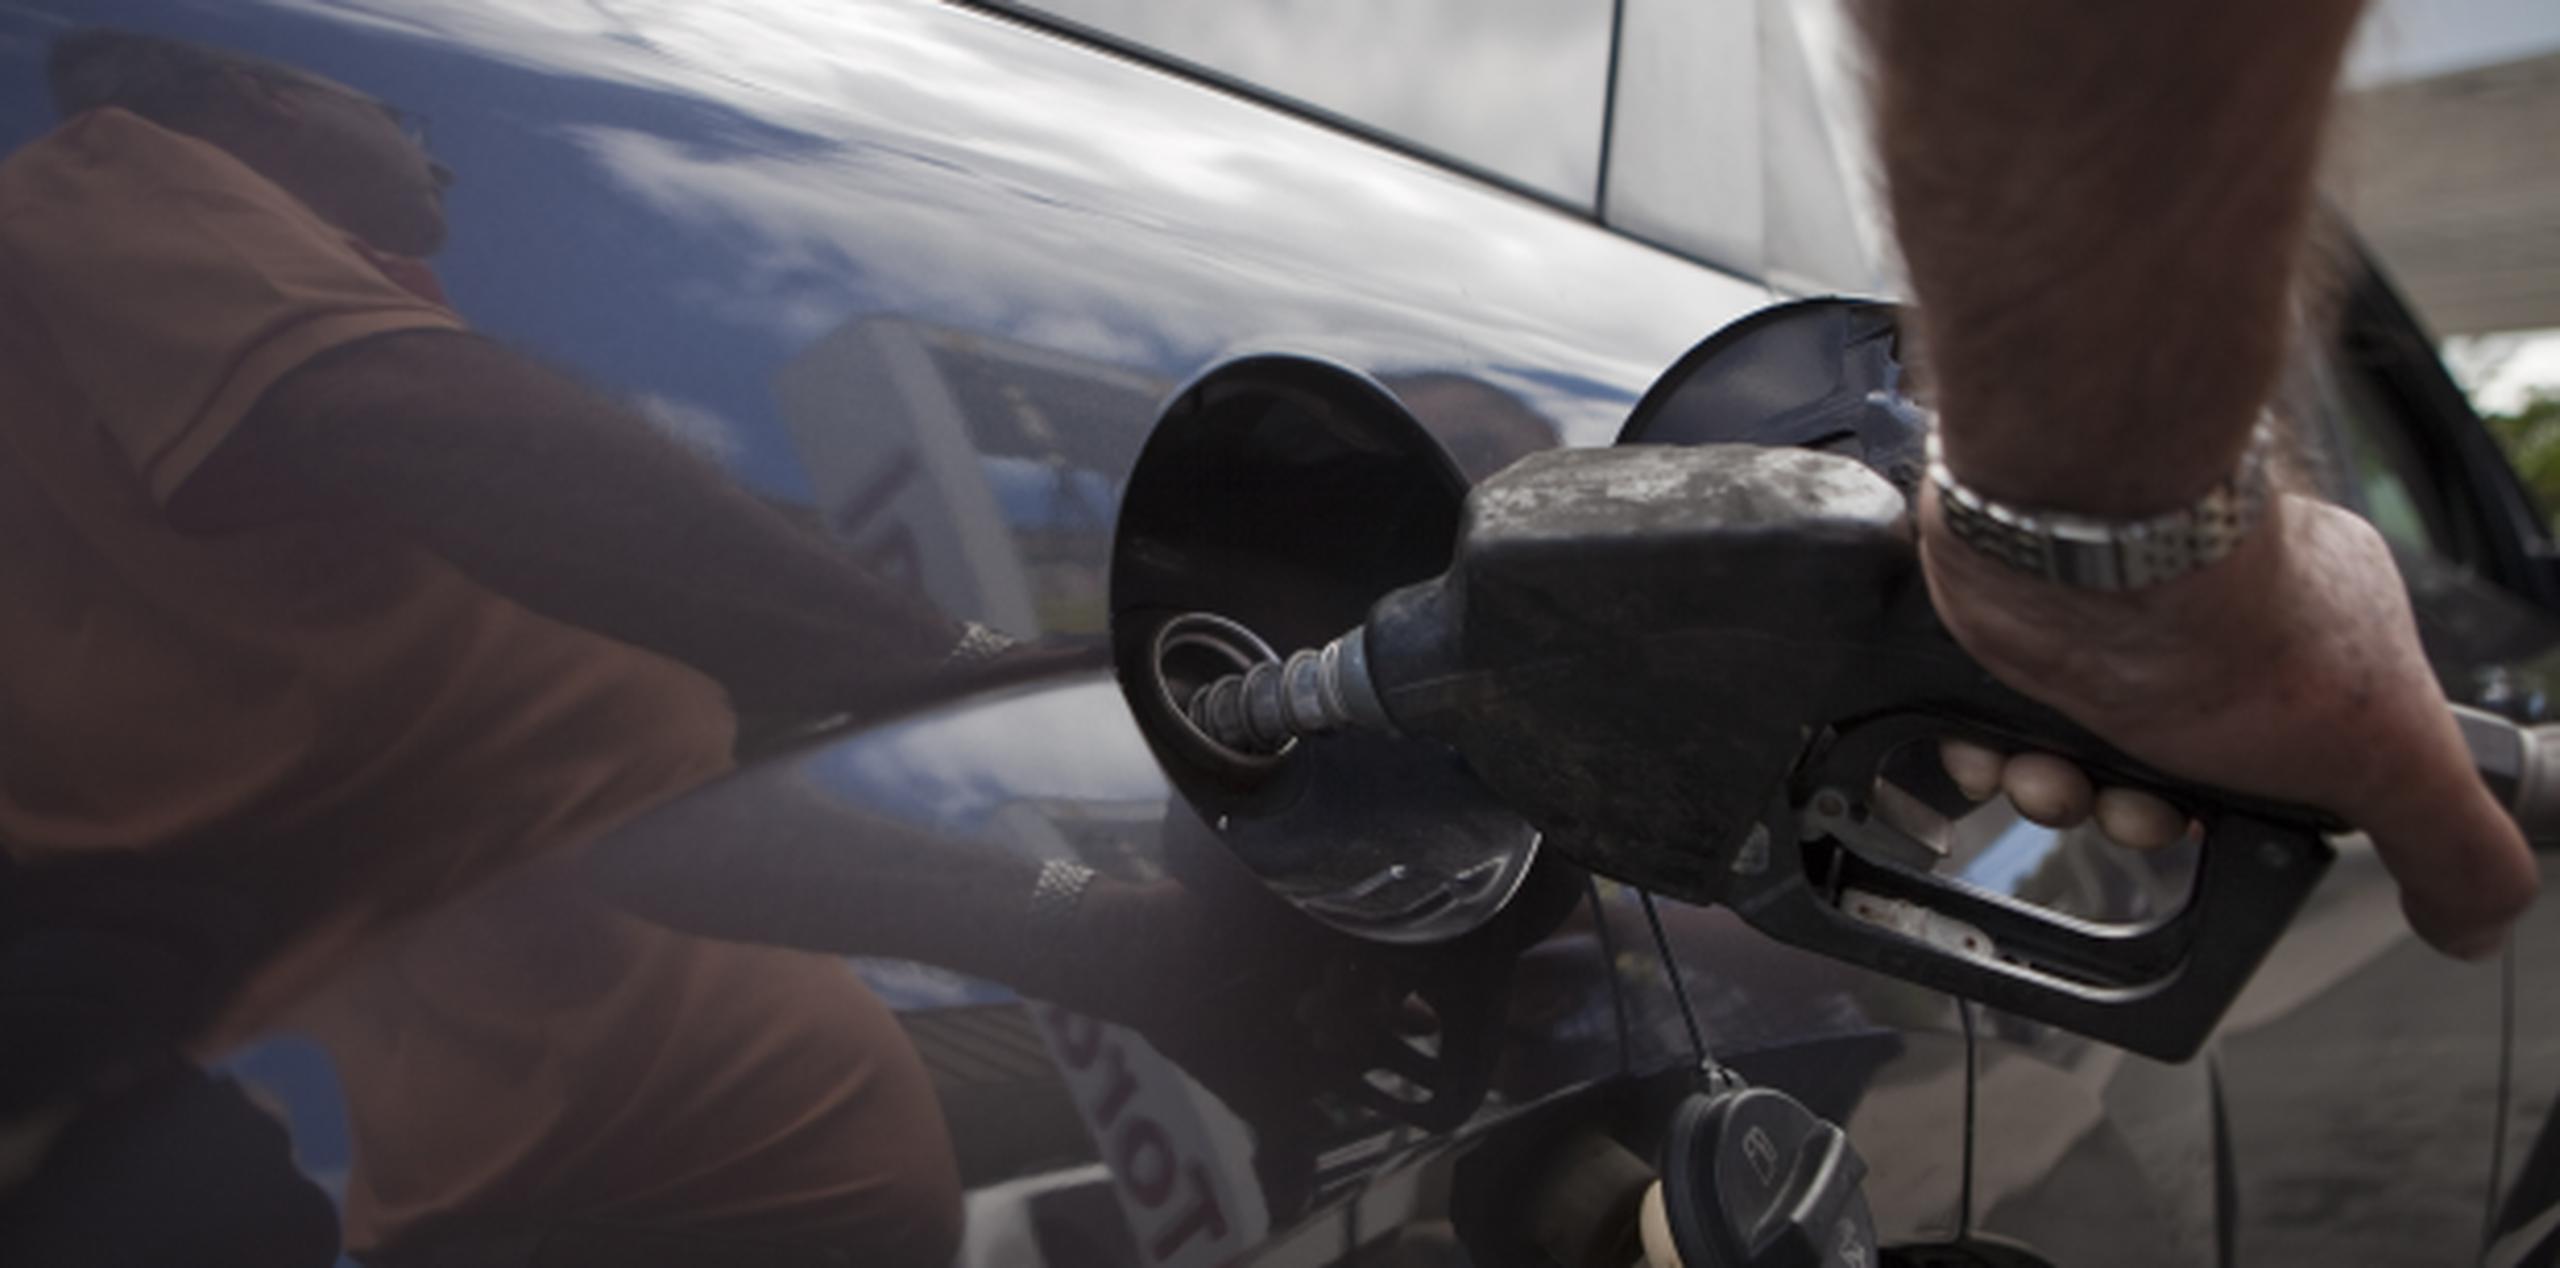 Los mayoristas están citados a comparecer este jueves ante la comisión senatorial que investiga las aparentes discrepancias entre el precio actual del crudo y el de la gasolina al detal. (Archivo)